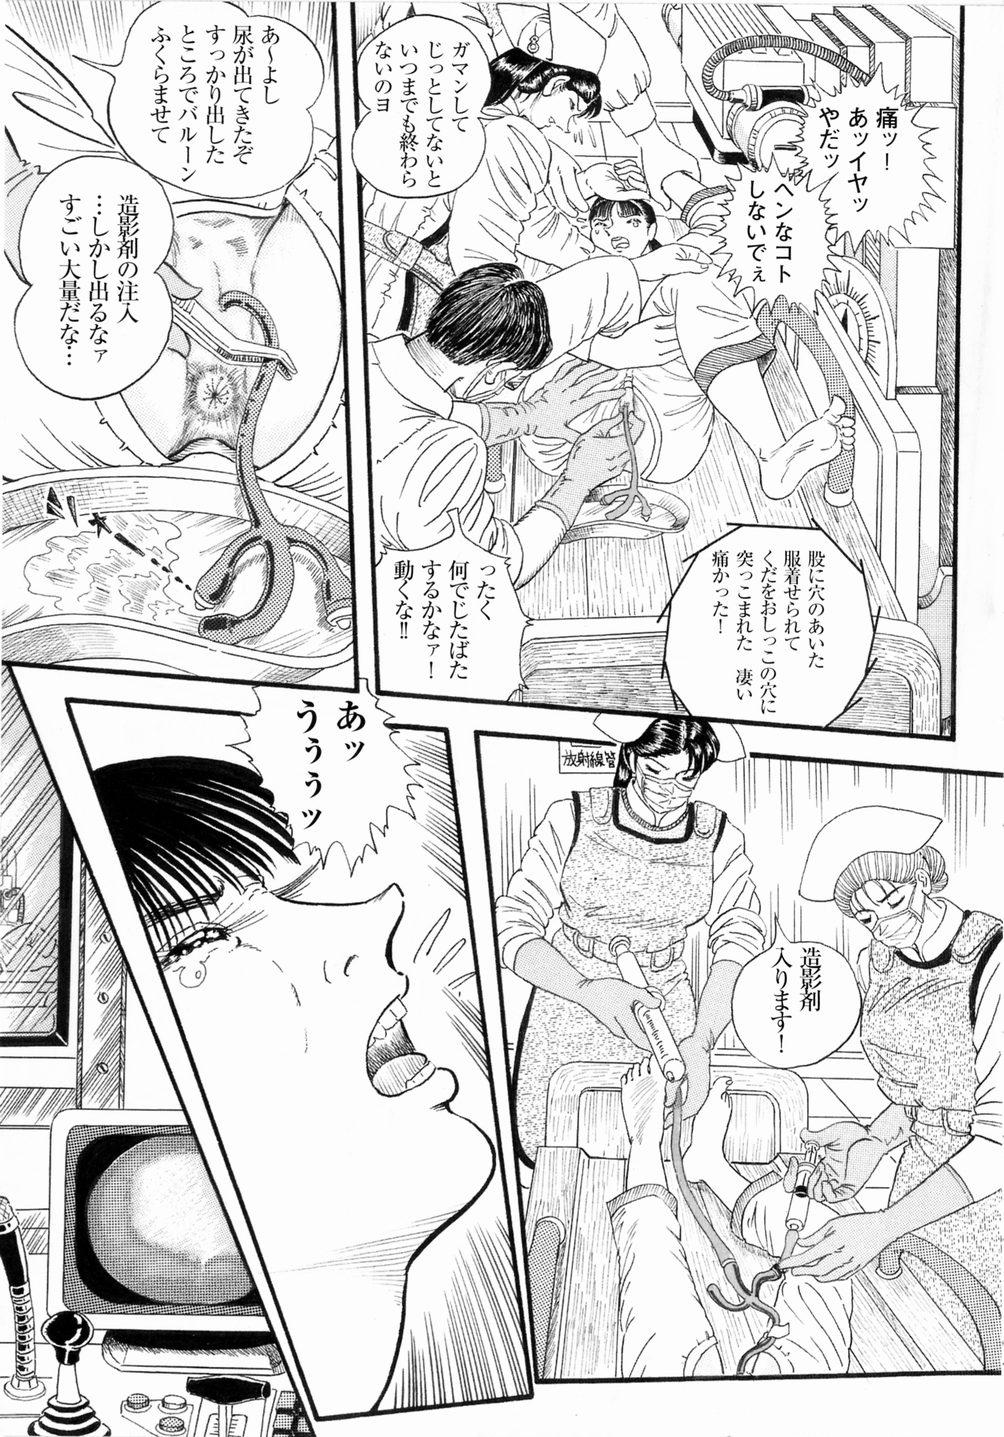 Sucks Hashimoto Iin Shinsatsu Note - Yuuko no Jijou Nami no Jijou Studs - Page 9